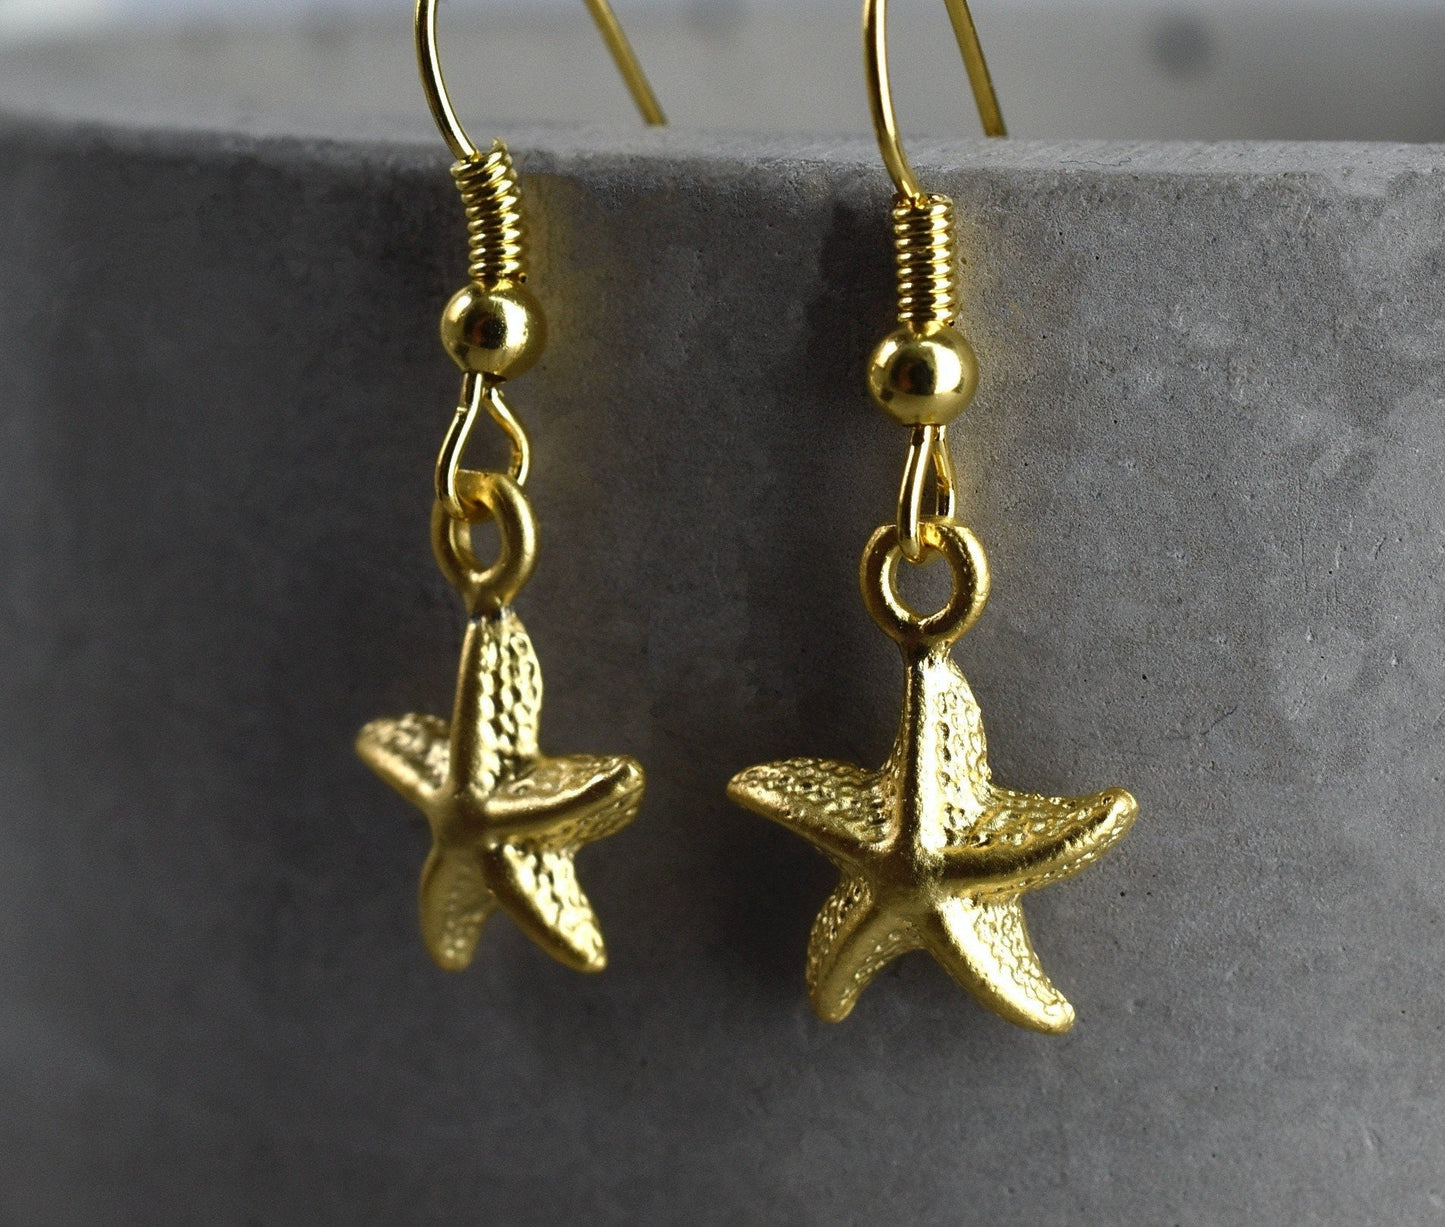 Starfish Golden Earrings - Gold Plated Elegant Maritim Ocean Earrings - Vinohr-82